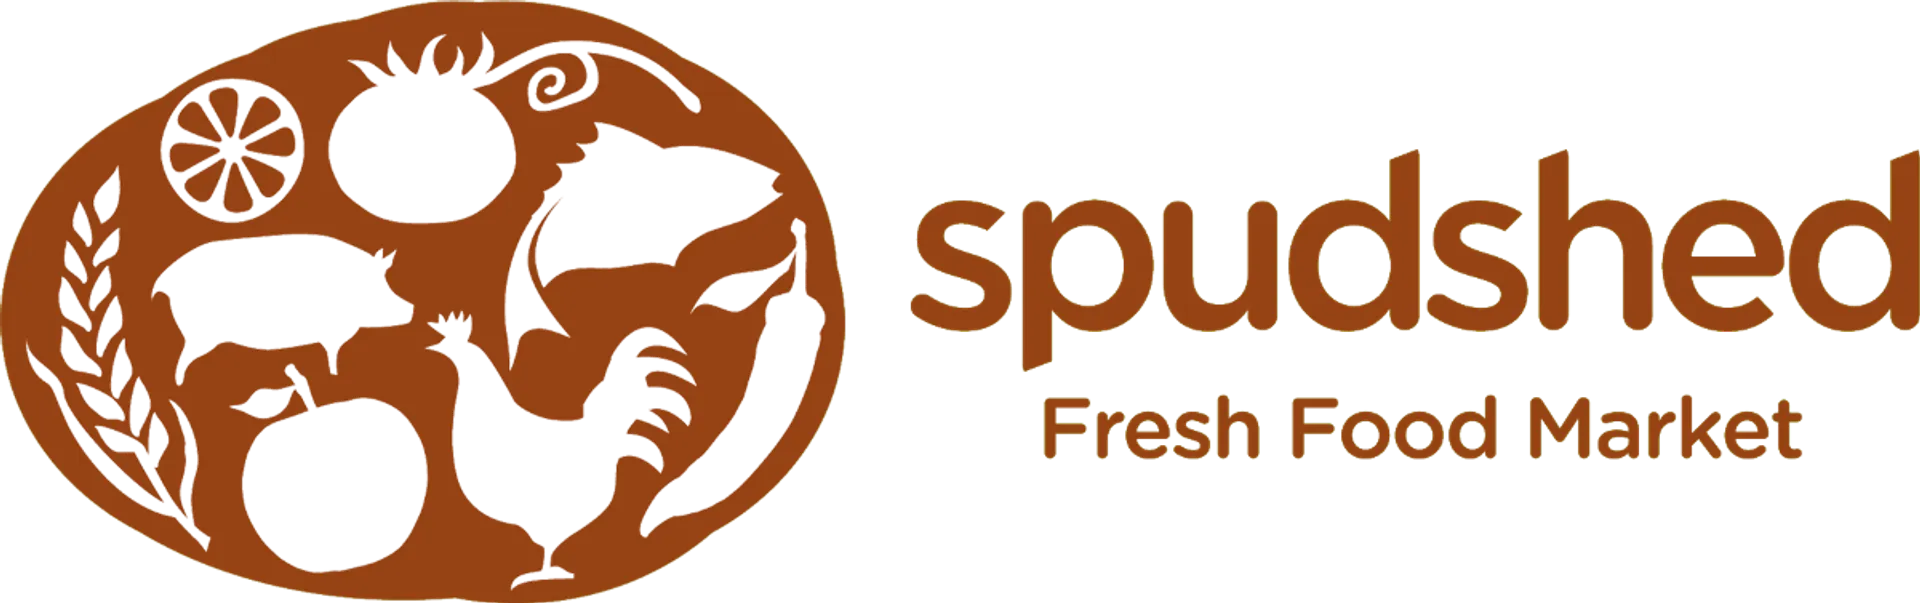 SPUDSHED logo